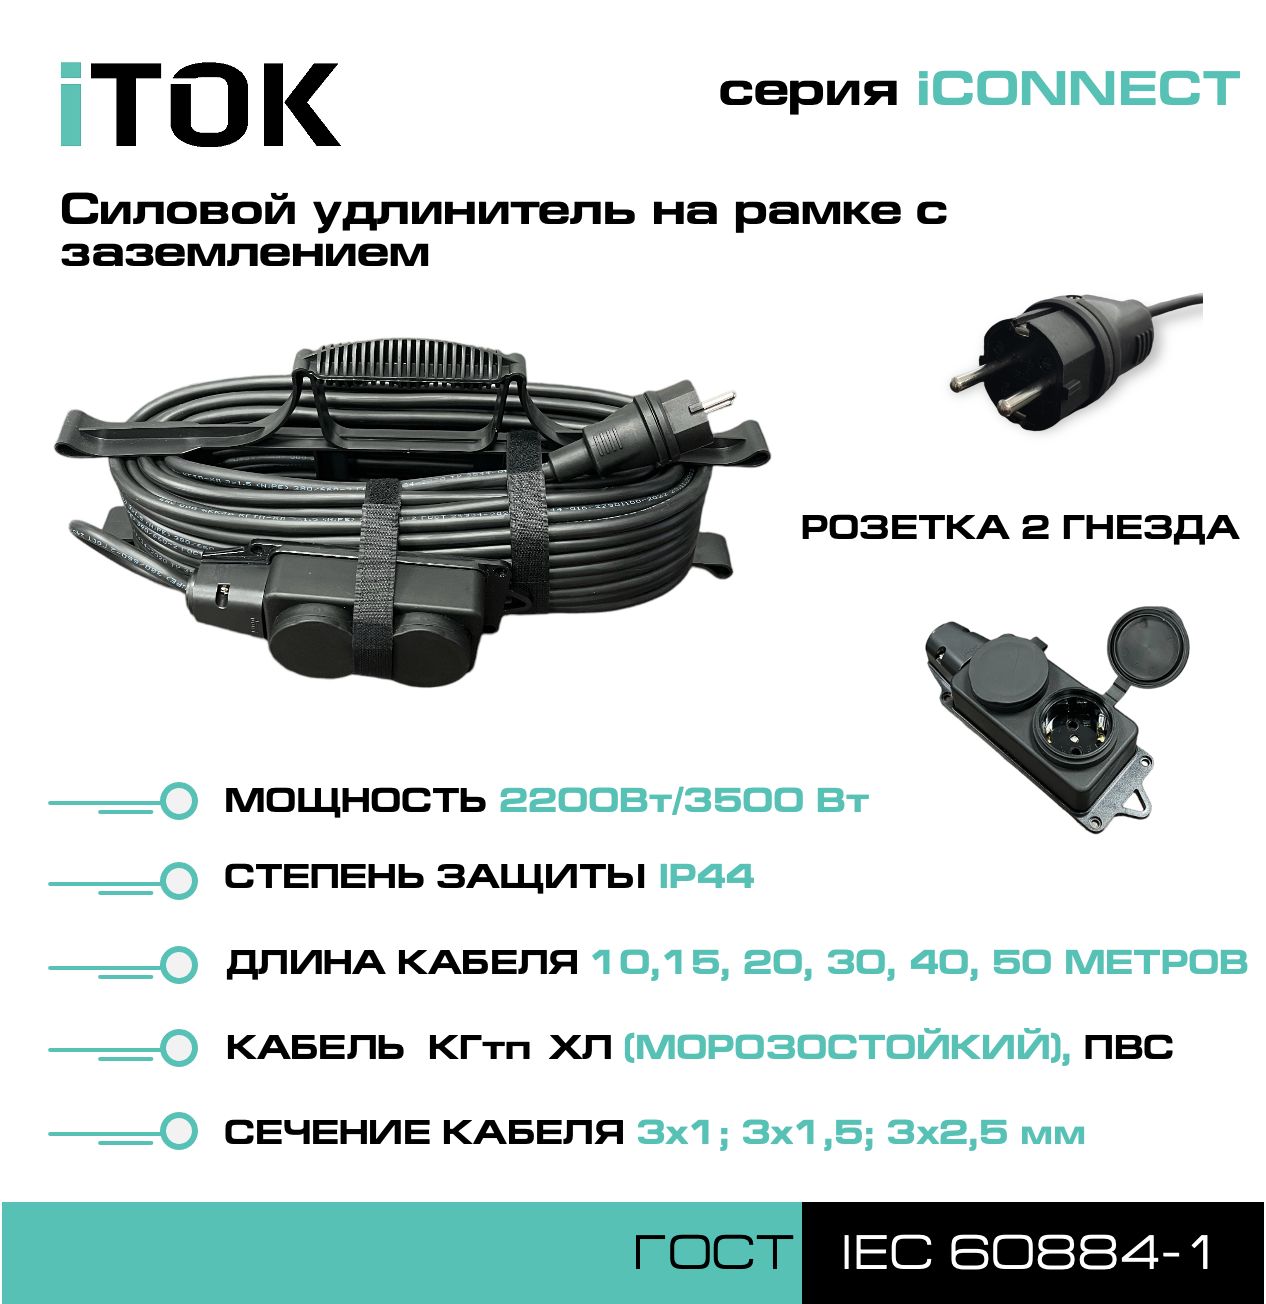 Удлинитель на рамке с заземлением серии iTOK iCONNECT ПВС 3х1,5 мм 2 гнезда IP44 20 м